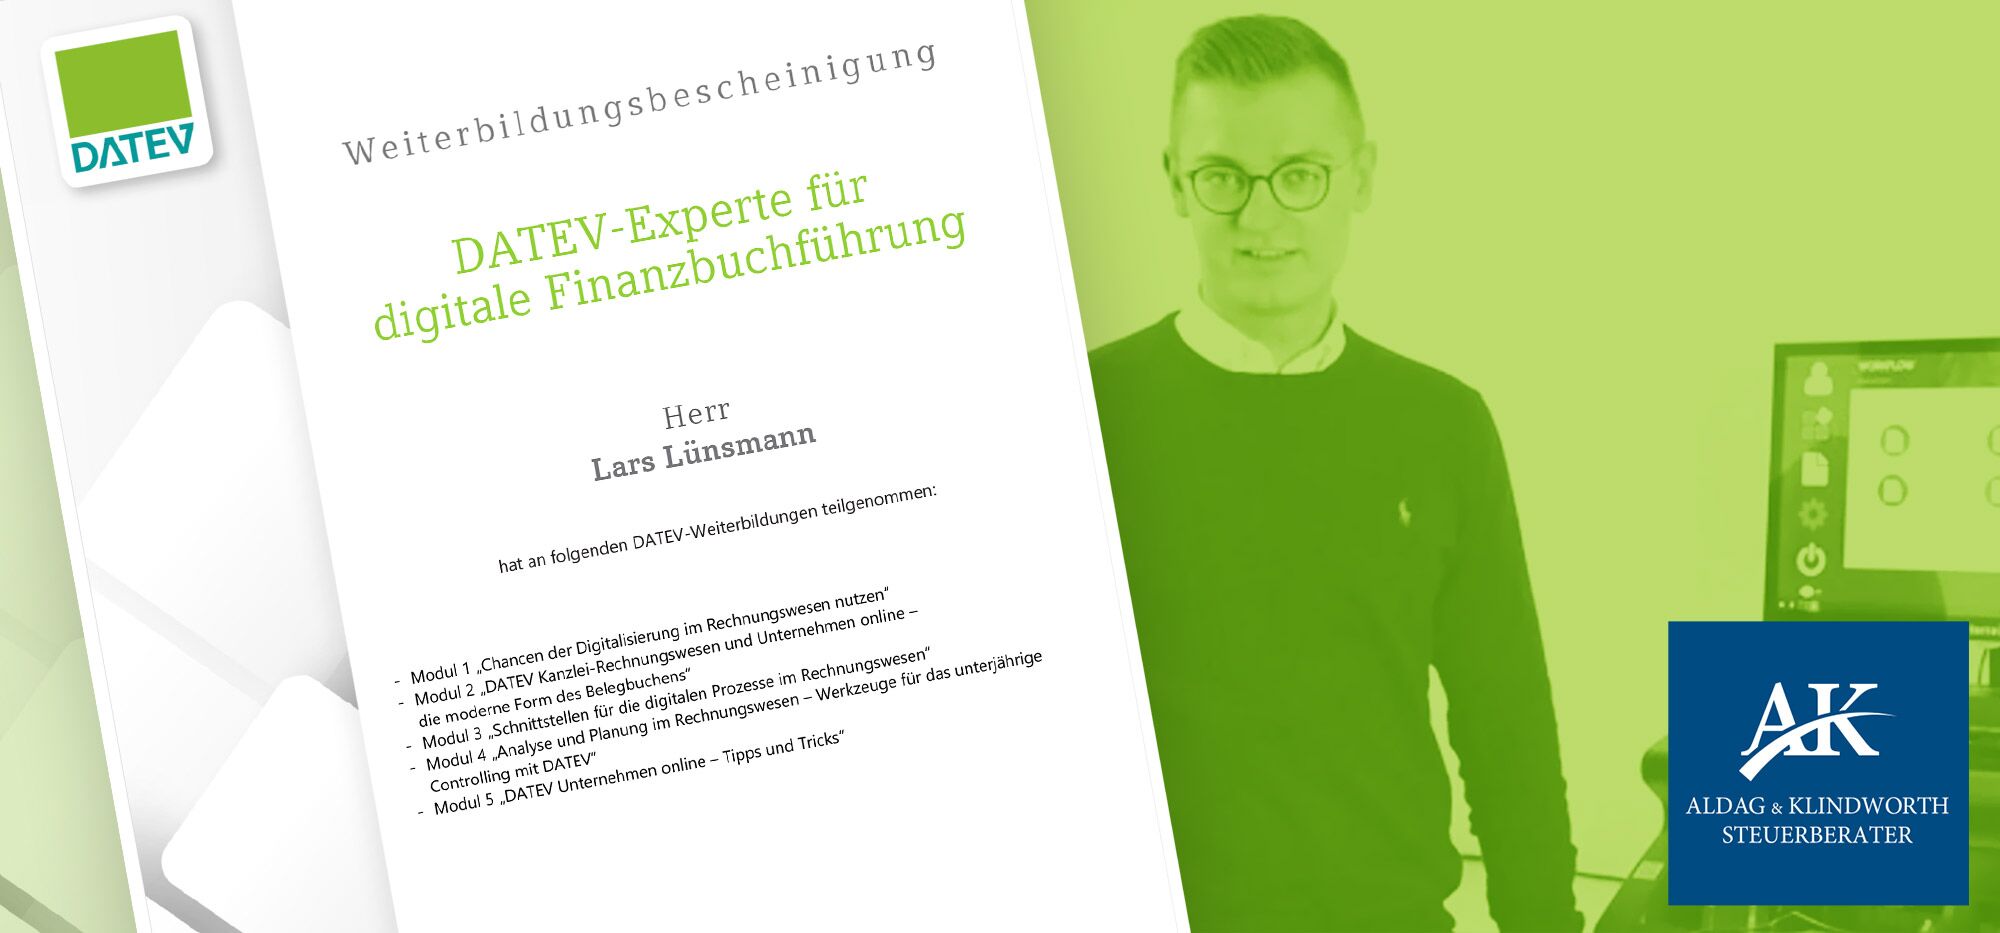 Aldag & Klindworth Steuerberater– DATEV-Experte für digitale Finanzbuchführung.